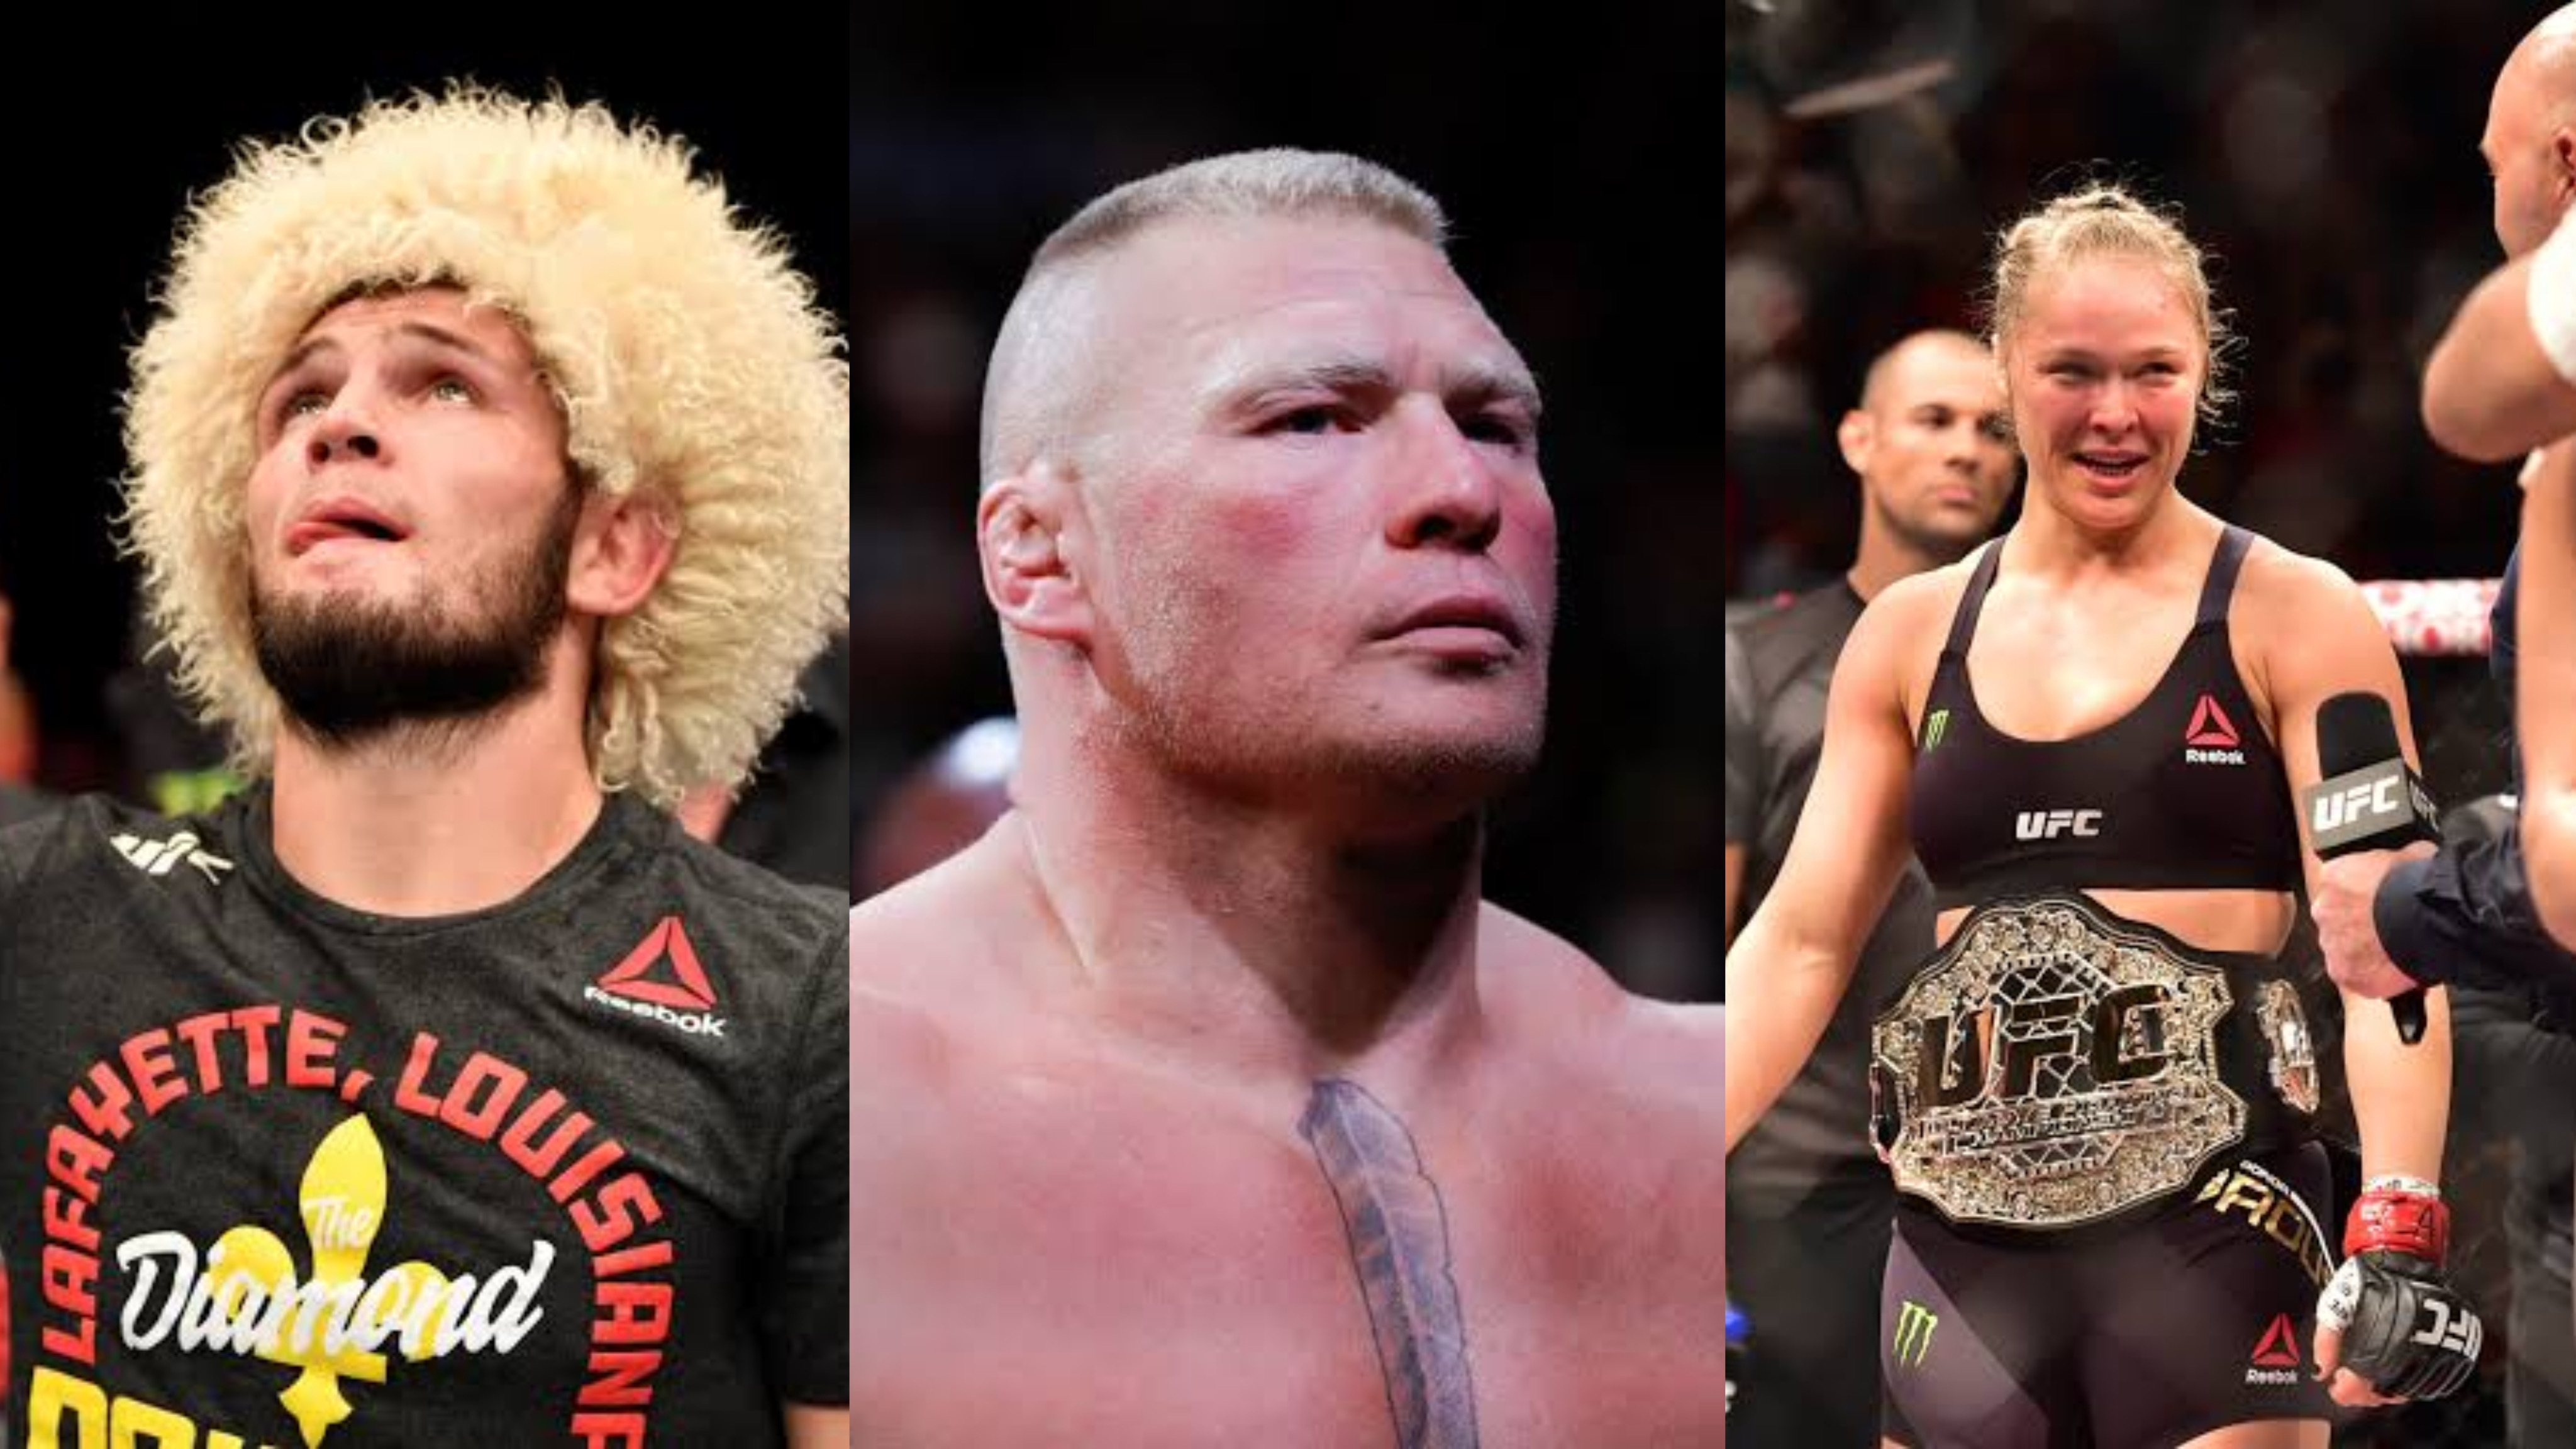 Những con số gây sốc chứng minh các ngôi sao WWE Brock Lesnar và Ronda Rousey là những siêu sao PPV tốt hơn Khabib Nurmagomedov ở UFC